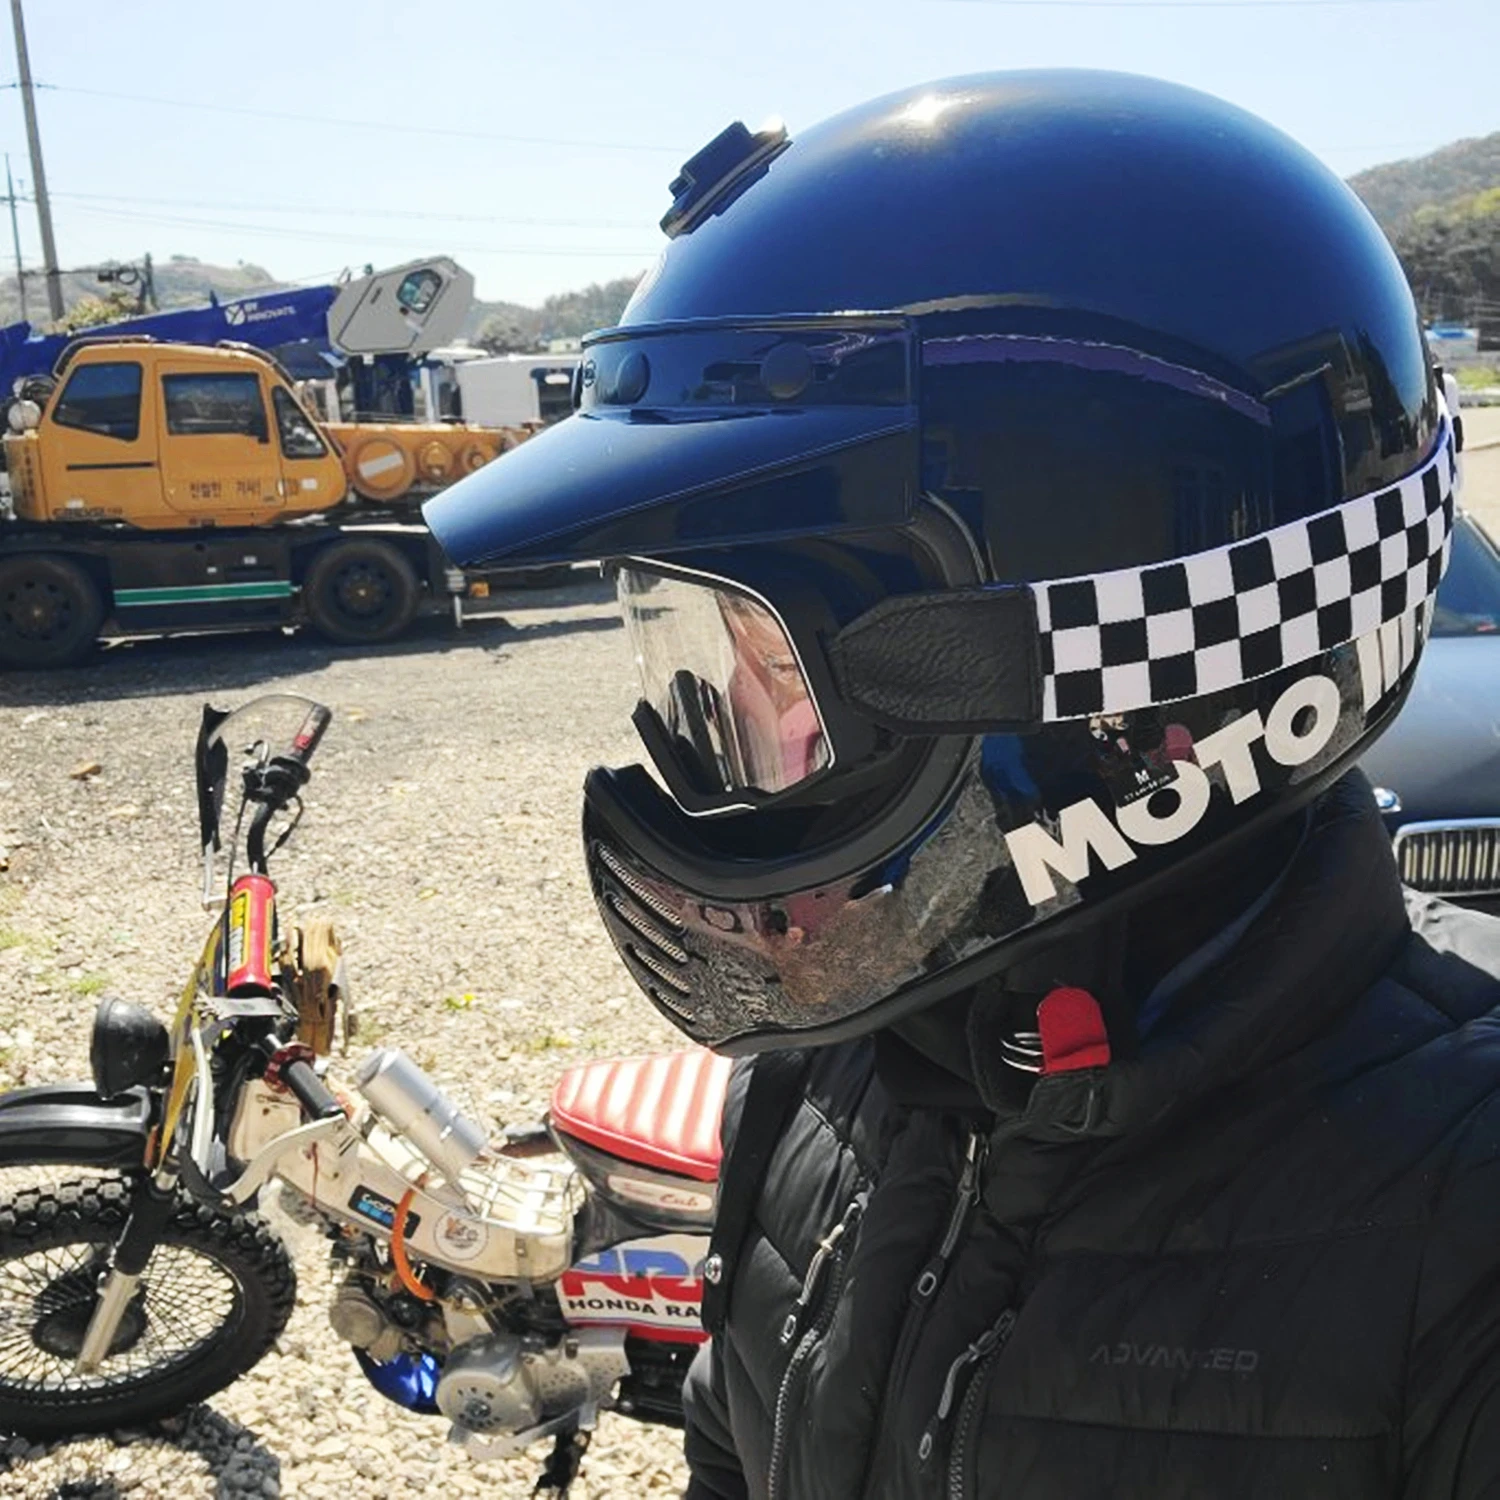 Retro gogle motocyklowe okulary Motocross okulary przeciwsłoneczne Vintage kask kolarstwo wyścigi Cafe Racer Chopper, wysyłka w ciągu 24 godzin